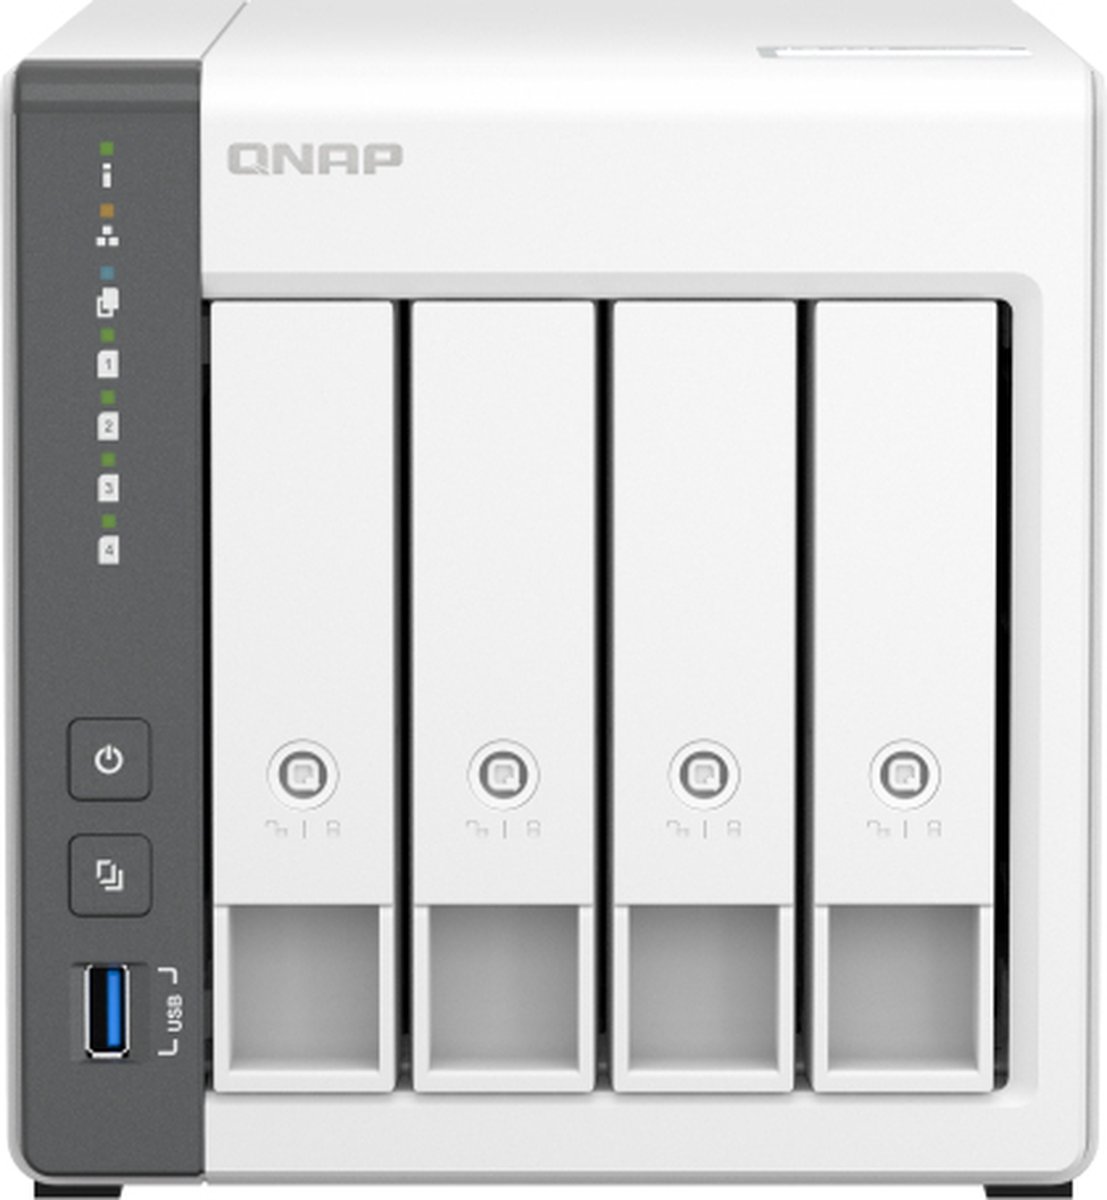 Network Storage Qnap TS-433-4G - QNAP